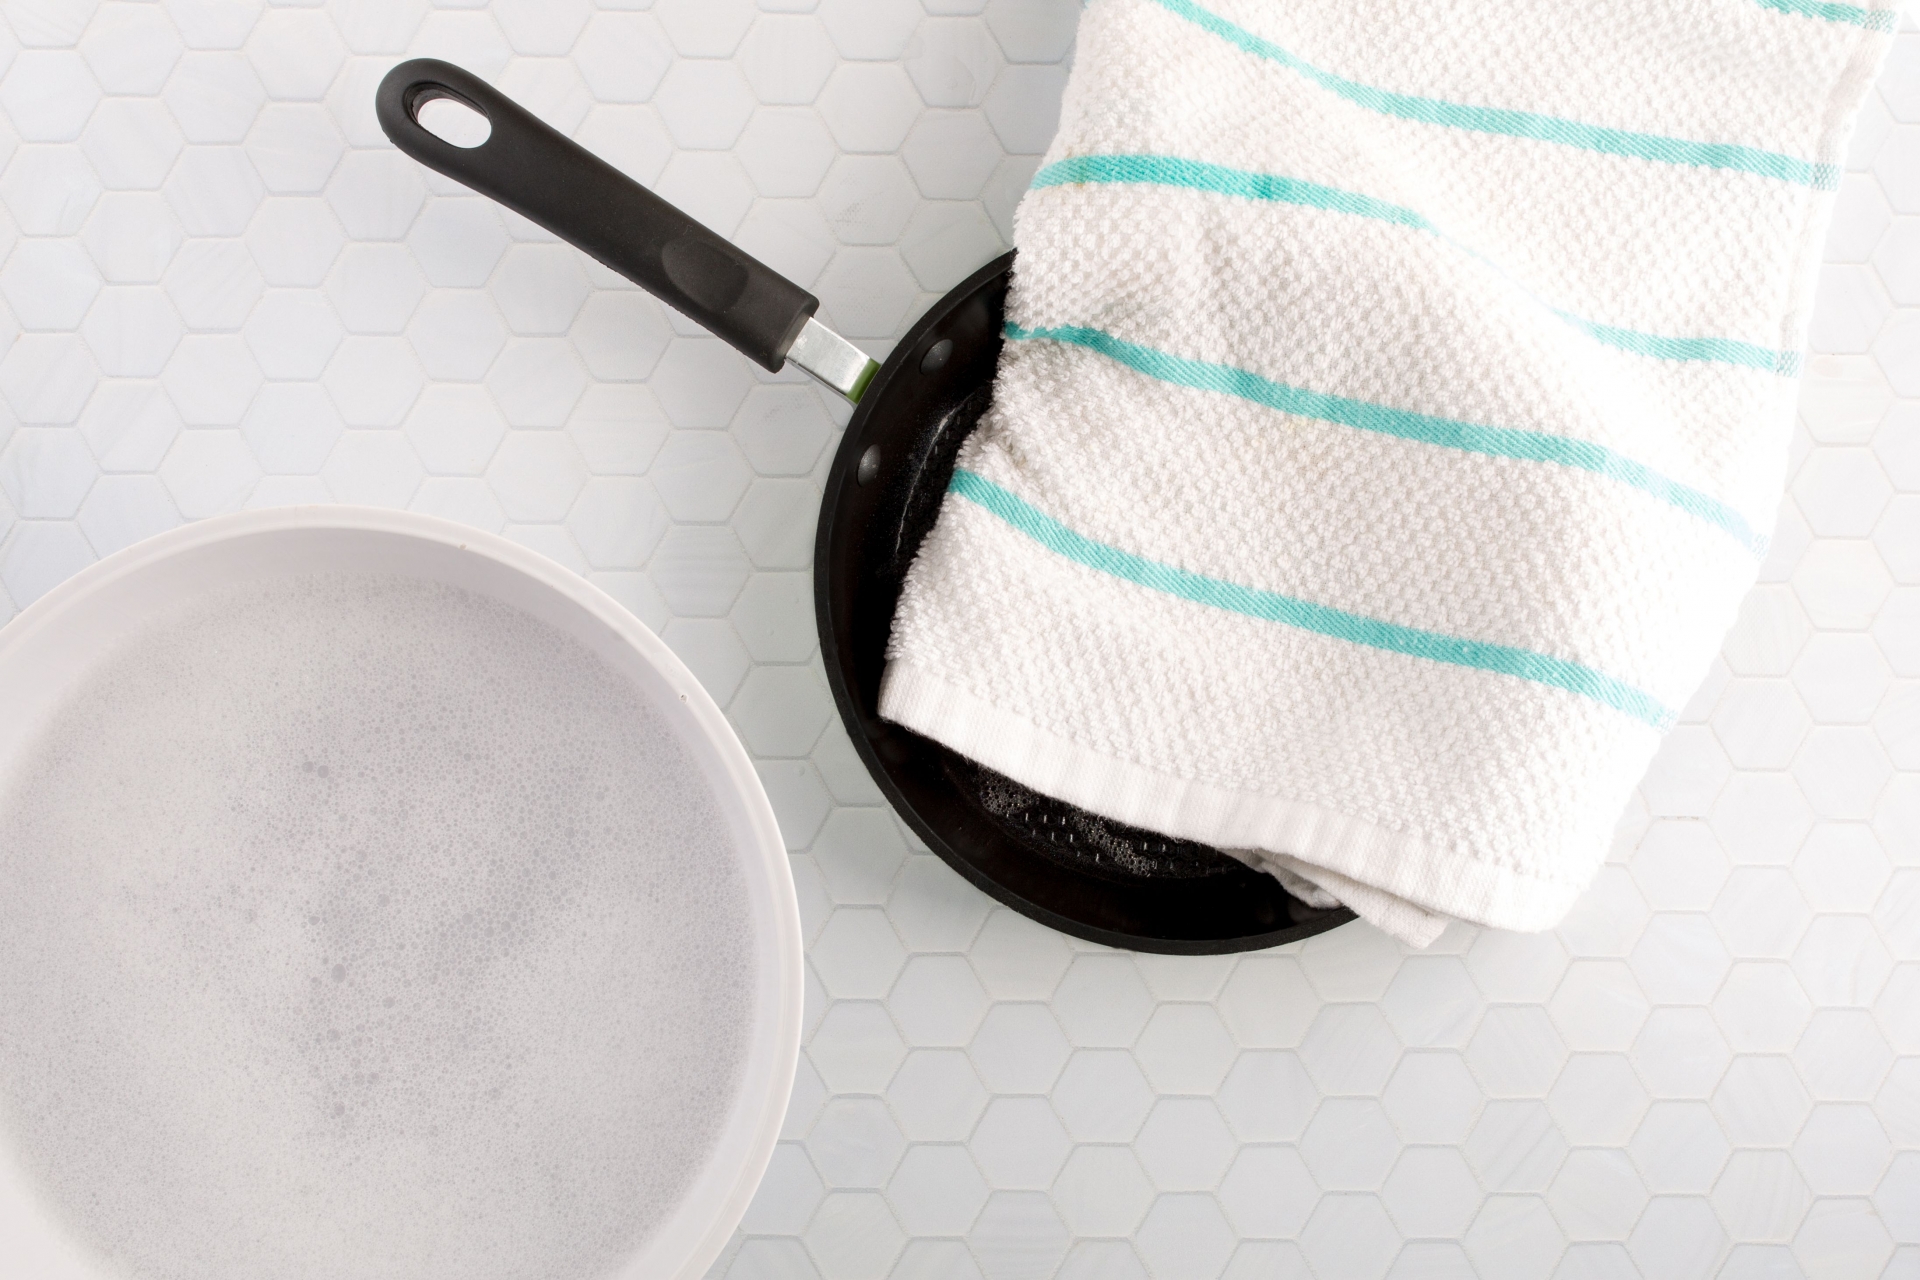 Trước khi cất vào tủ bếp cần trải một lớp vải mềm lên trên để chảo không bị tiếp xúc với các đồ dùng bằng kim loại.